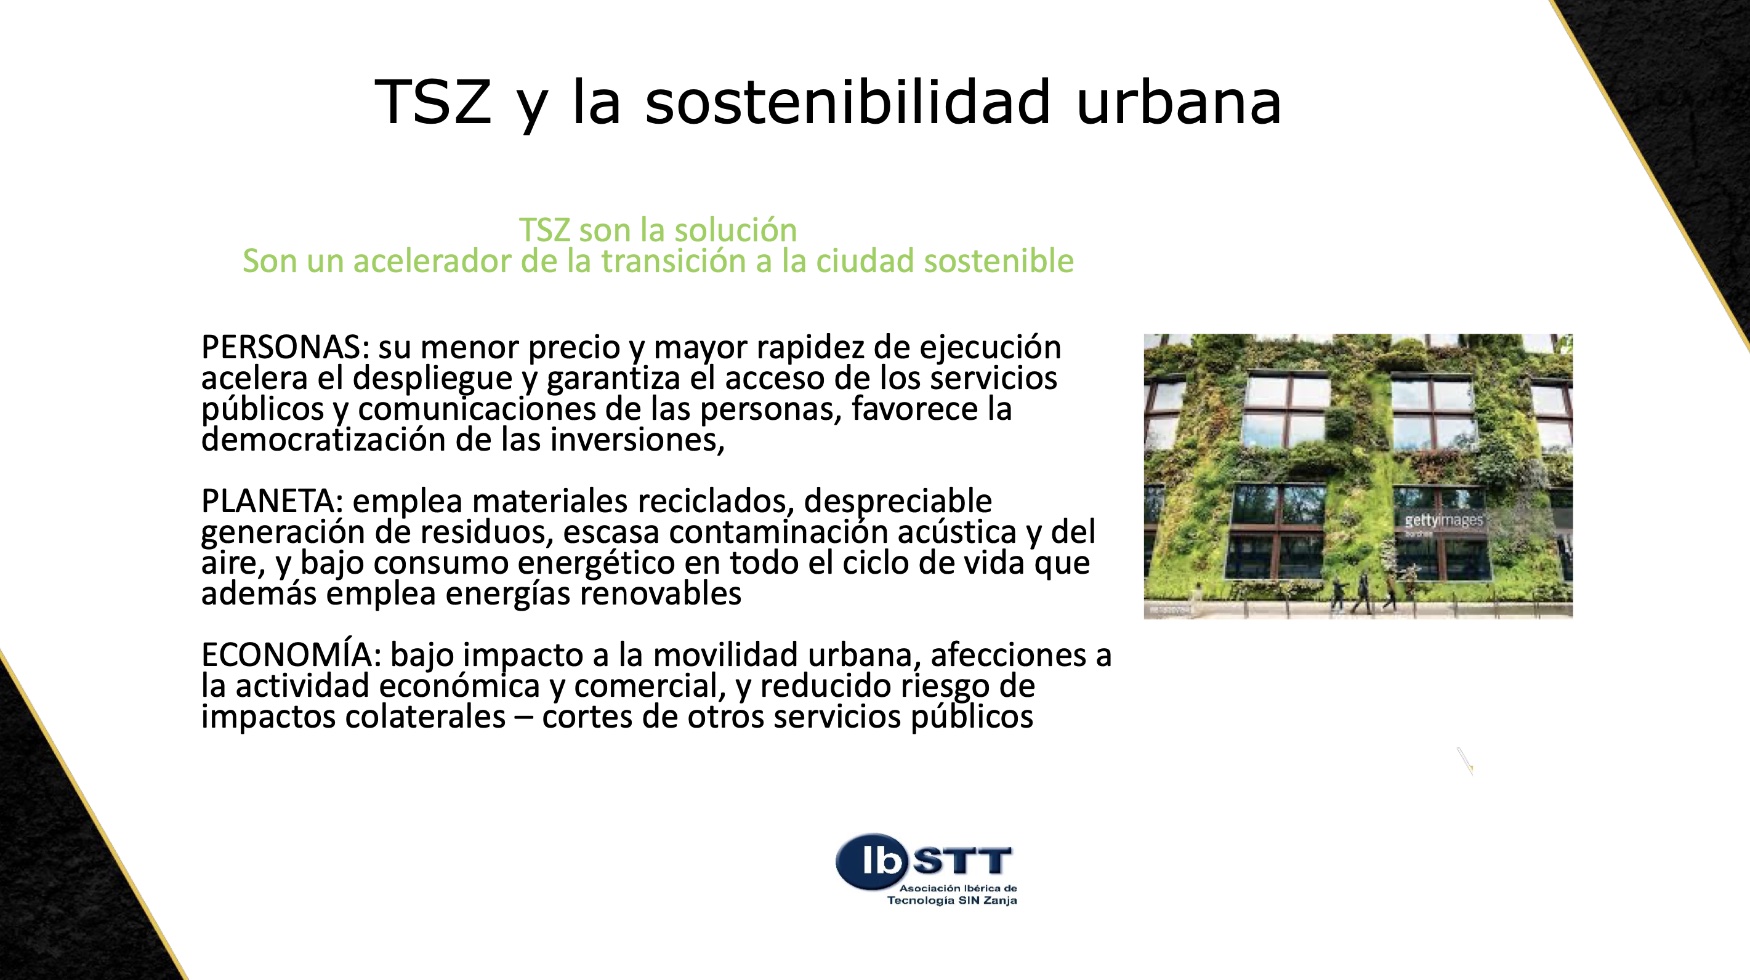 Cmo pueden contribuir las TSZ a la sostenibilidad urbana, segn IbSTT